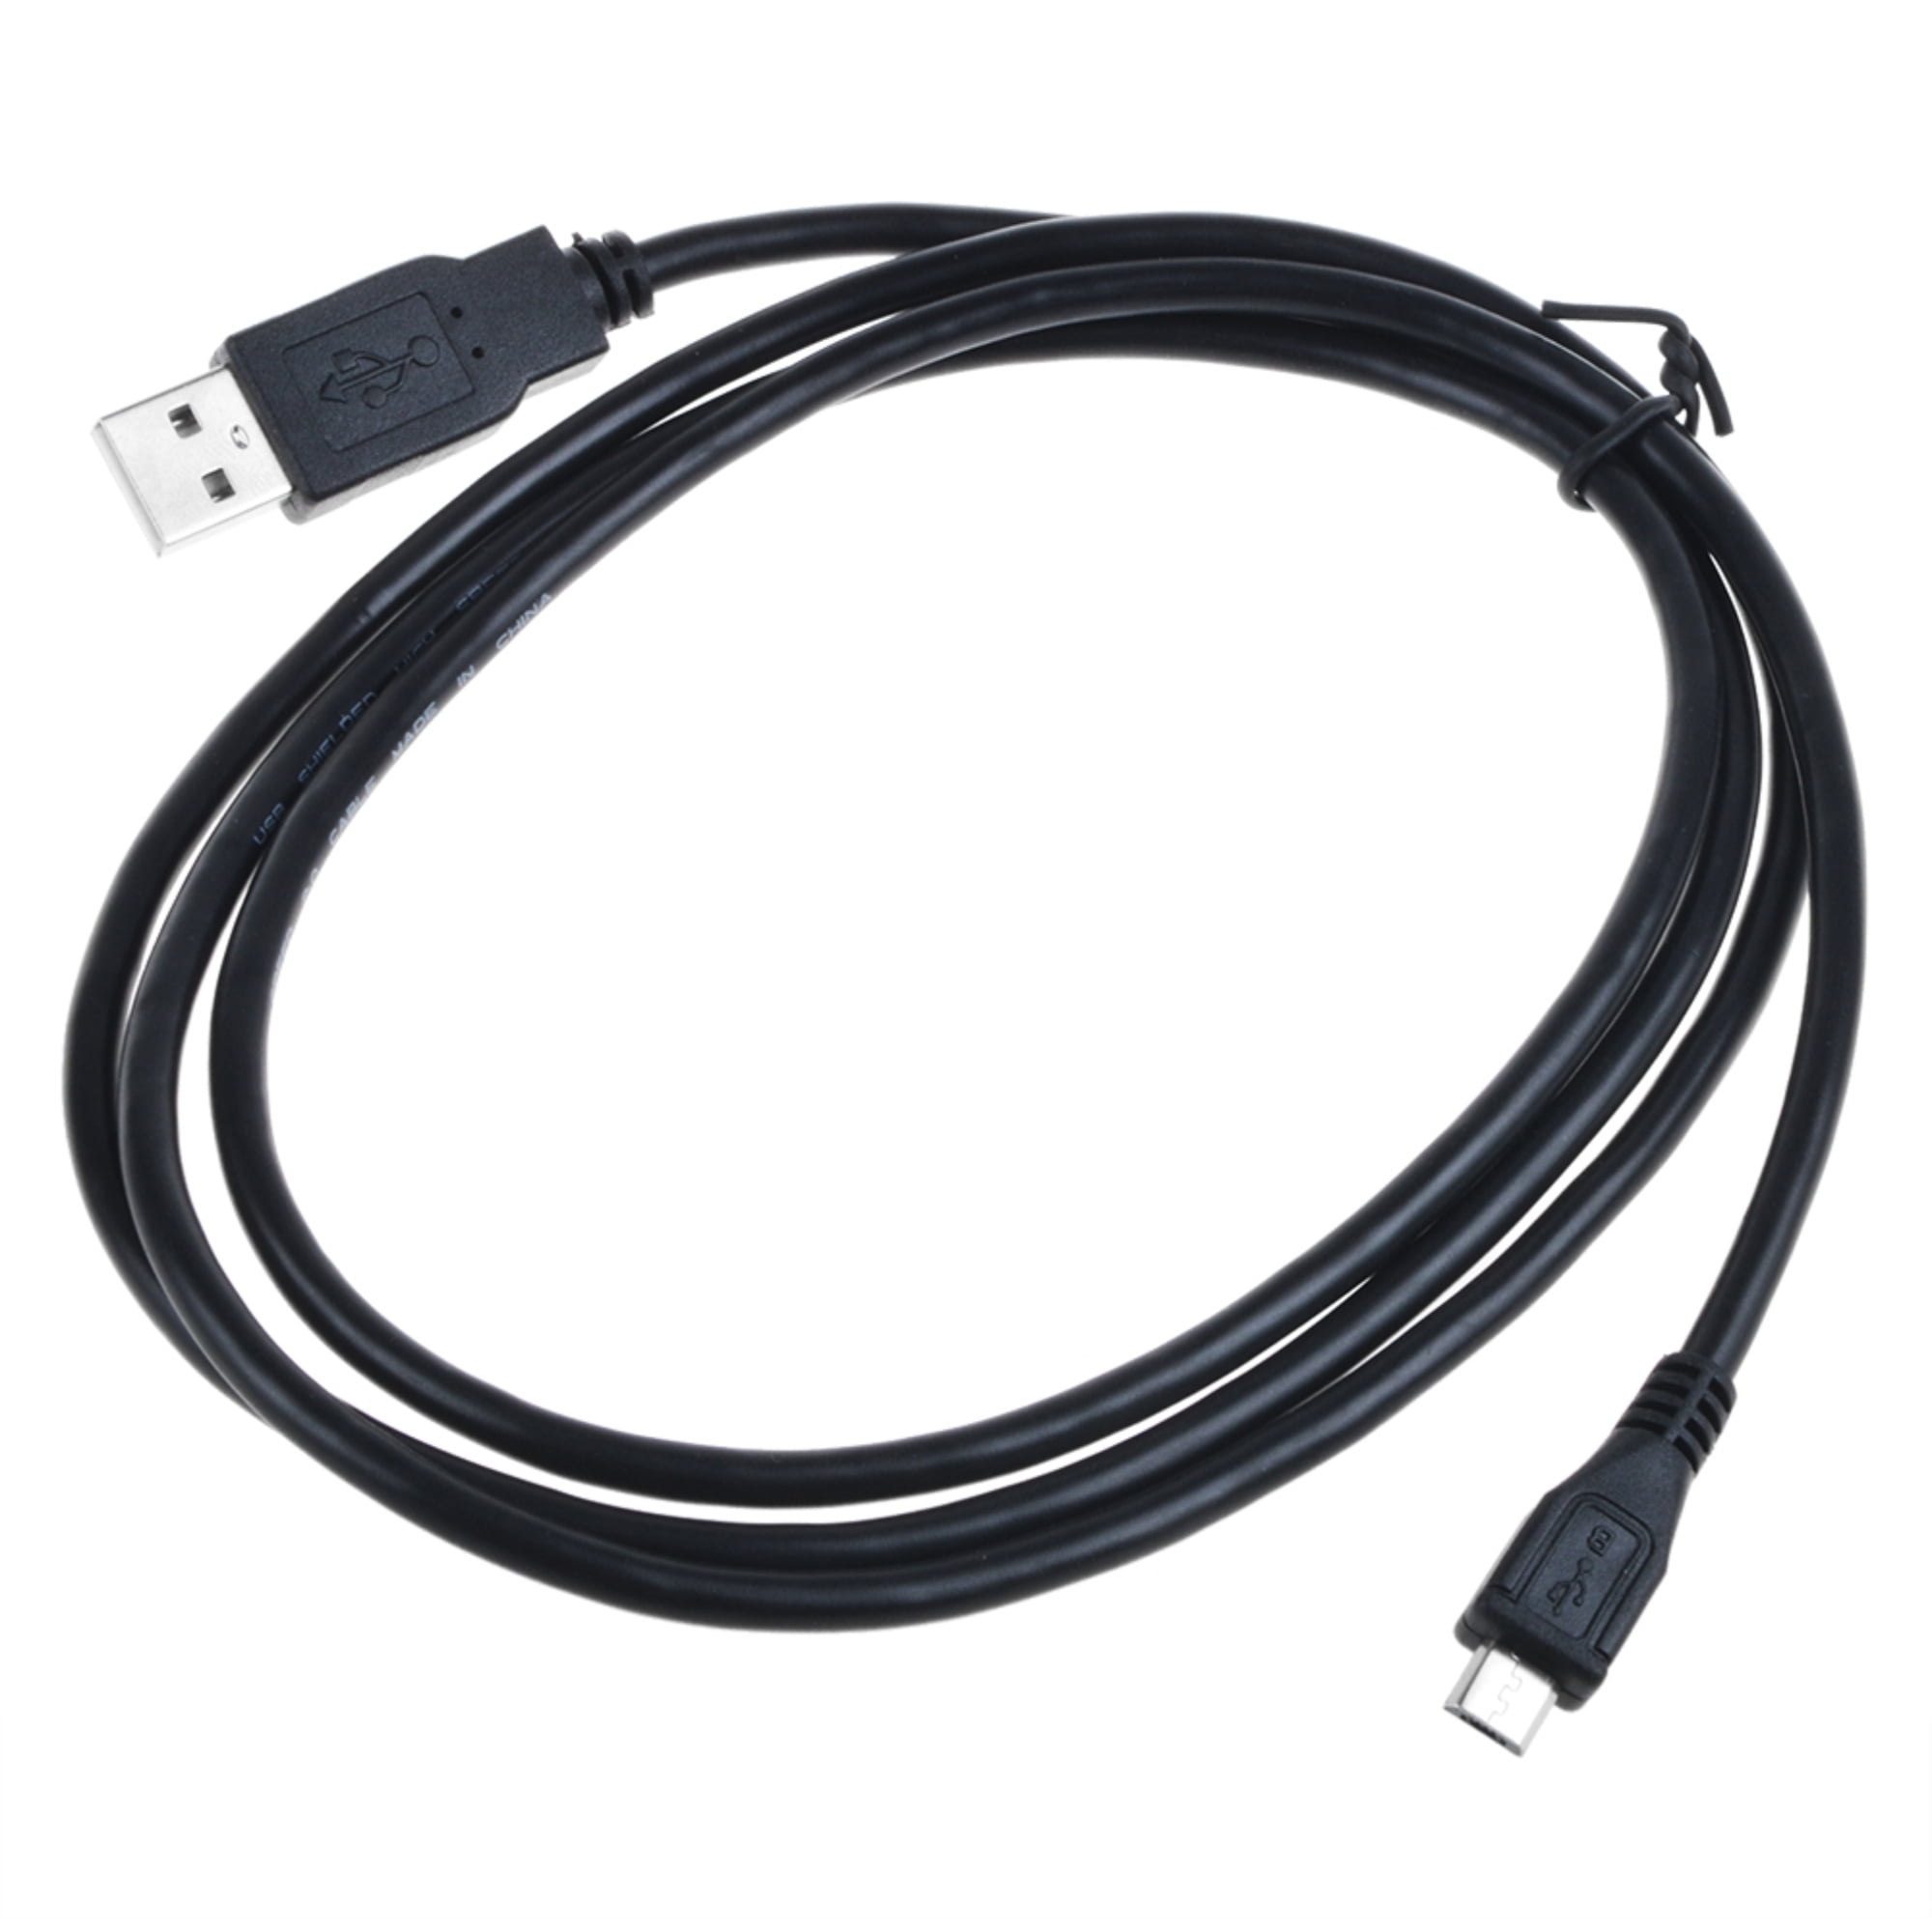 Streng Voorkomen zijn PKPOWER 5ft Micro USB Charging Power Cable Cord For Motorola Moto G4 Play Moto  G4 Plus Smart Phone - Walmart.com